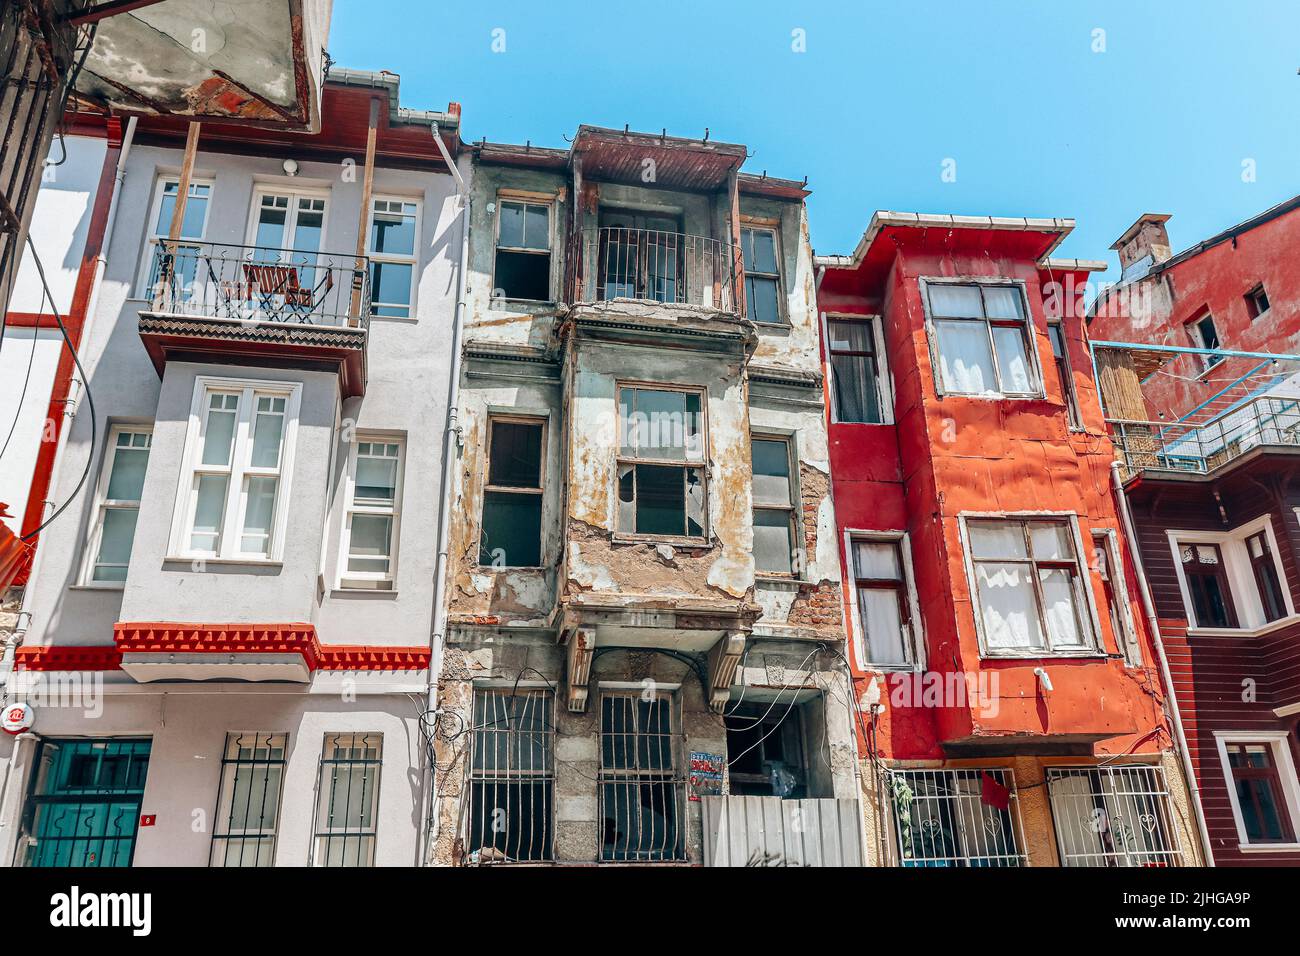 maisons en bois anciennes et délabrées dans la ville d'istanbul. Turquie Banque D'Images